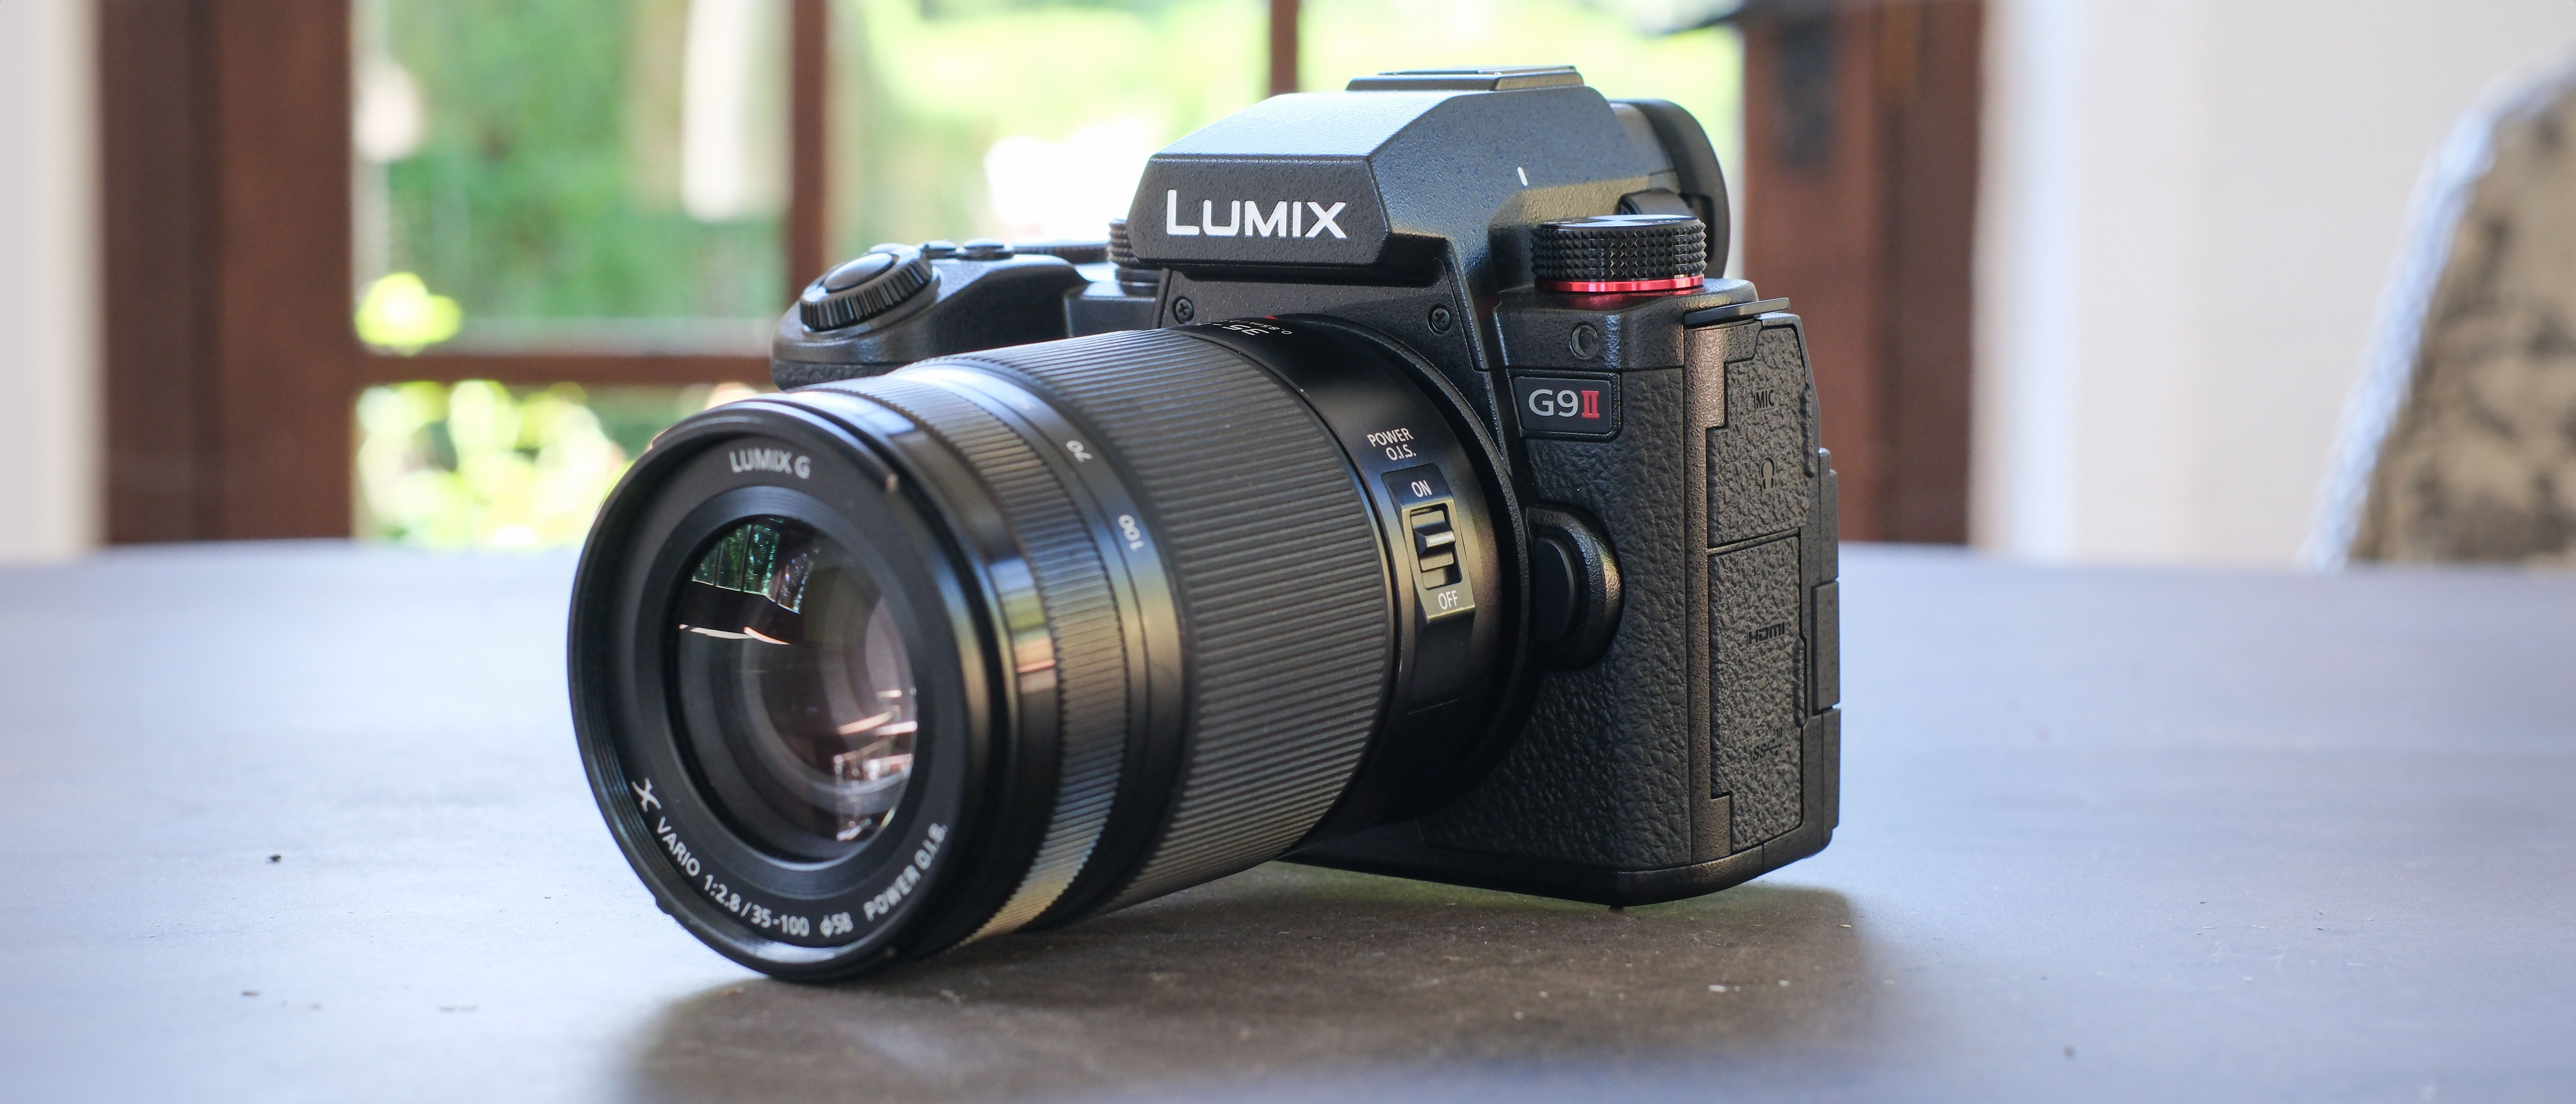 كاميرا باناسونيك لوميكس G9 II الرقمية